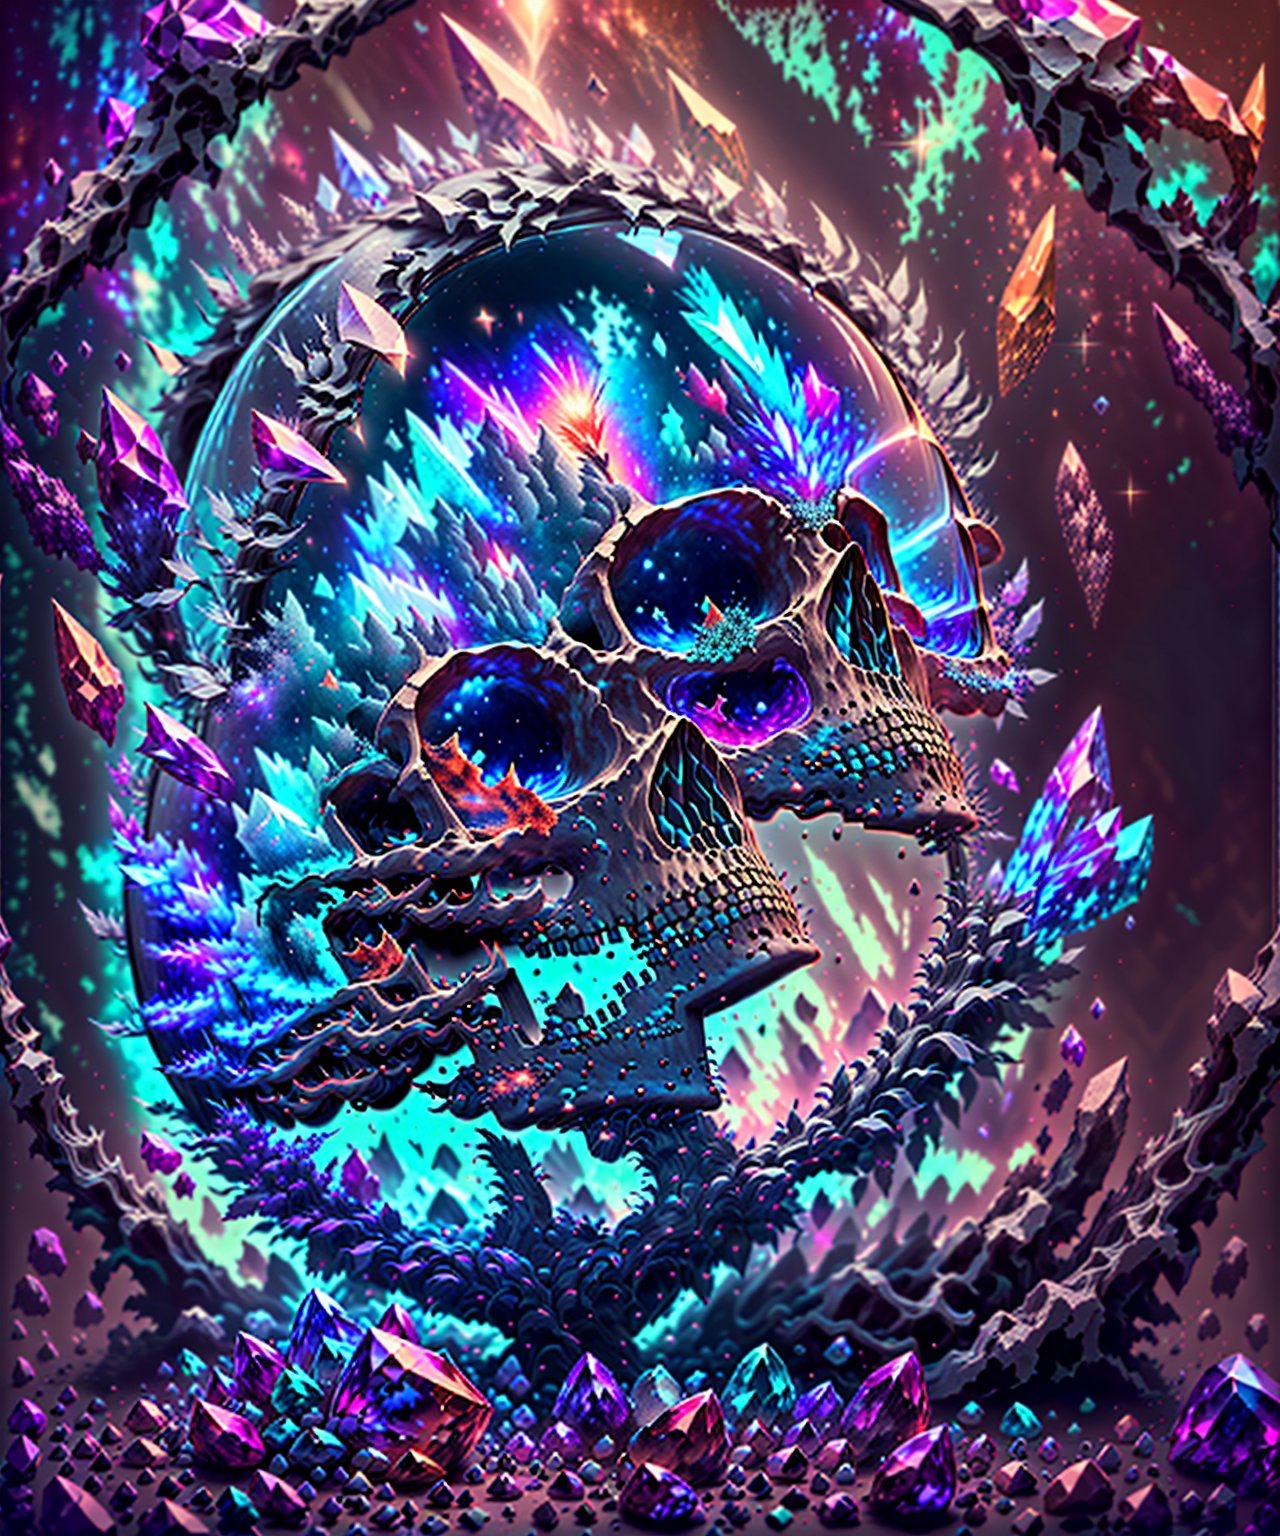 um close up de um cristal com uma luz roxa dentro dele, a macro photograph by Adam Marczyński, Unsplash, Vanitas, cinzas cristal, crystal skull, cristal brilhante em uma rocha, Shiny Quartz Crystal Skull, nebula with the shape of a skull, parcialmente sanguinolento cristalizado, sacred skull, cristais bonitos, feito de sinapse cristalizada, Neon